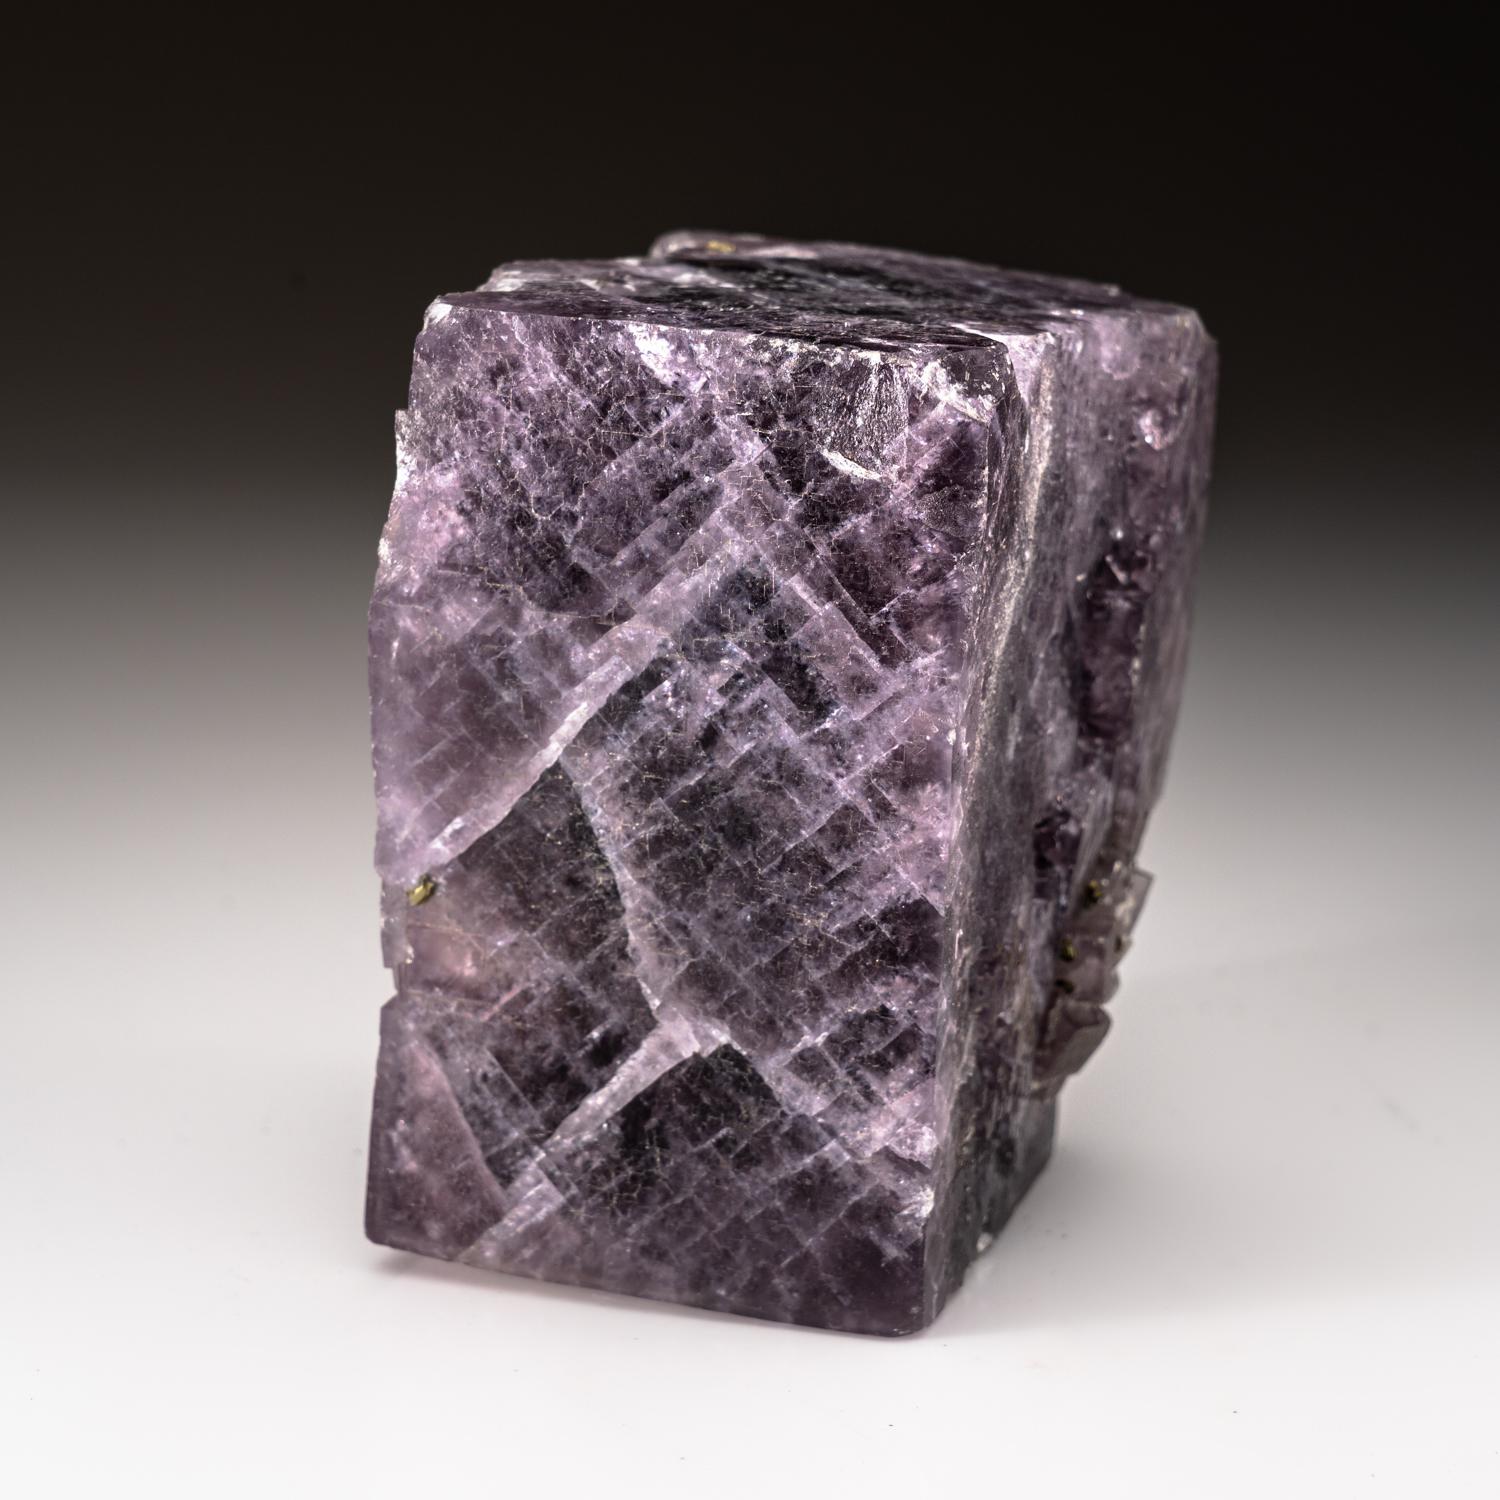 De la région de Caravia-Berbes, Asturies, Espagne

Énorme cristal de fluorine violette de 4 pouces avec une riche couleur de raisin translucide et une zonation cubique interne bien définie.

 

3 lbs, 3 x 2.5 x 4 pouces